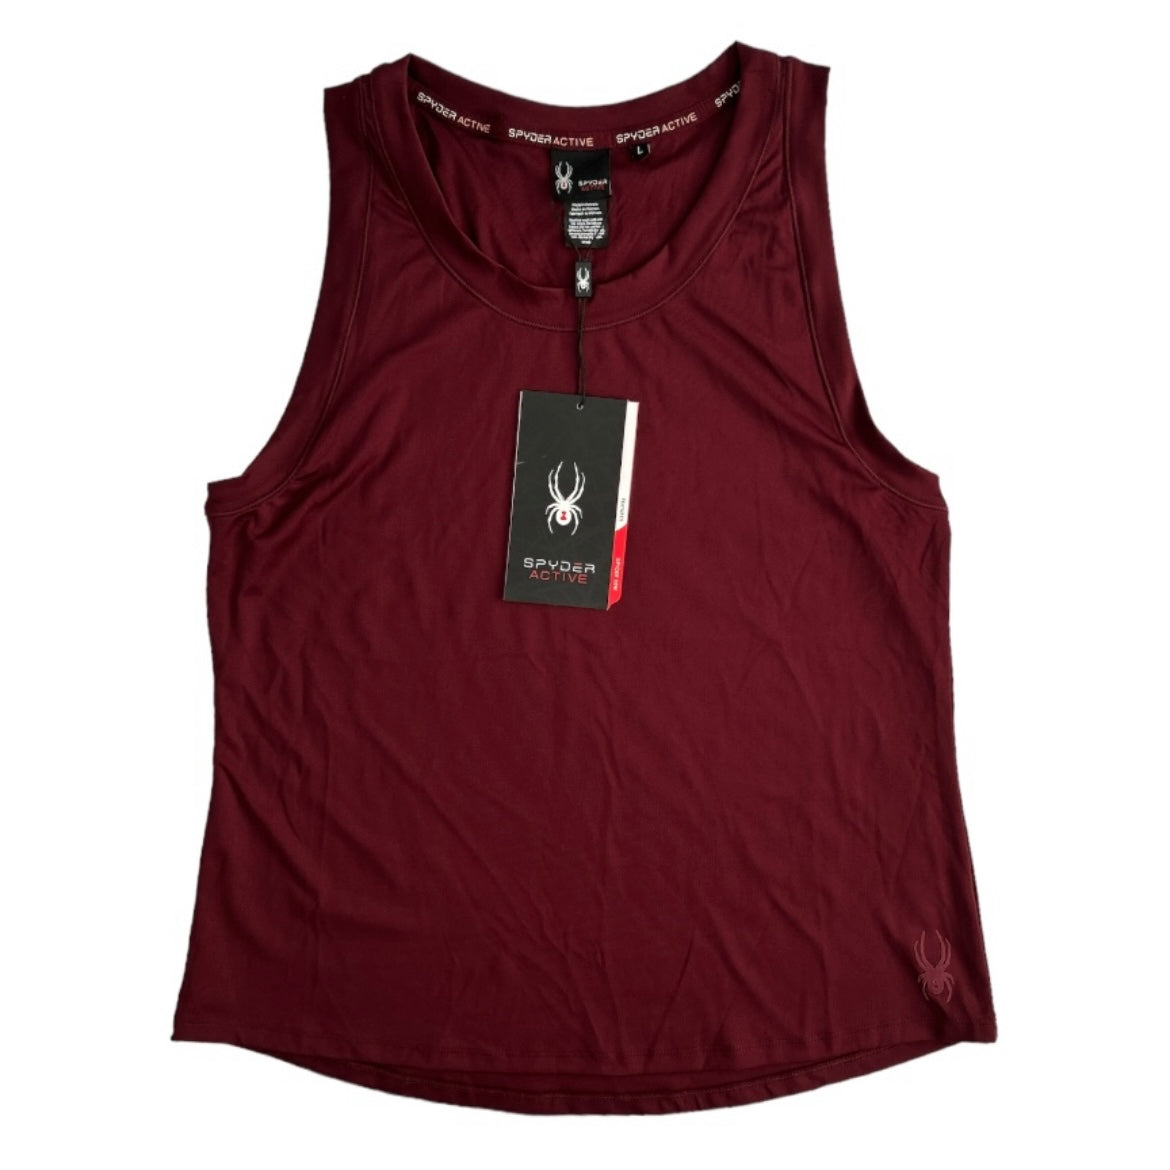 Women's Active Tank-Top Sleeveless Sport Shirt